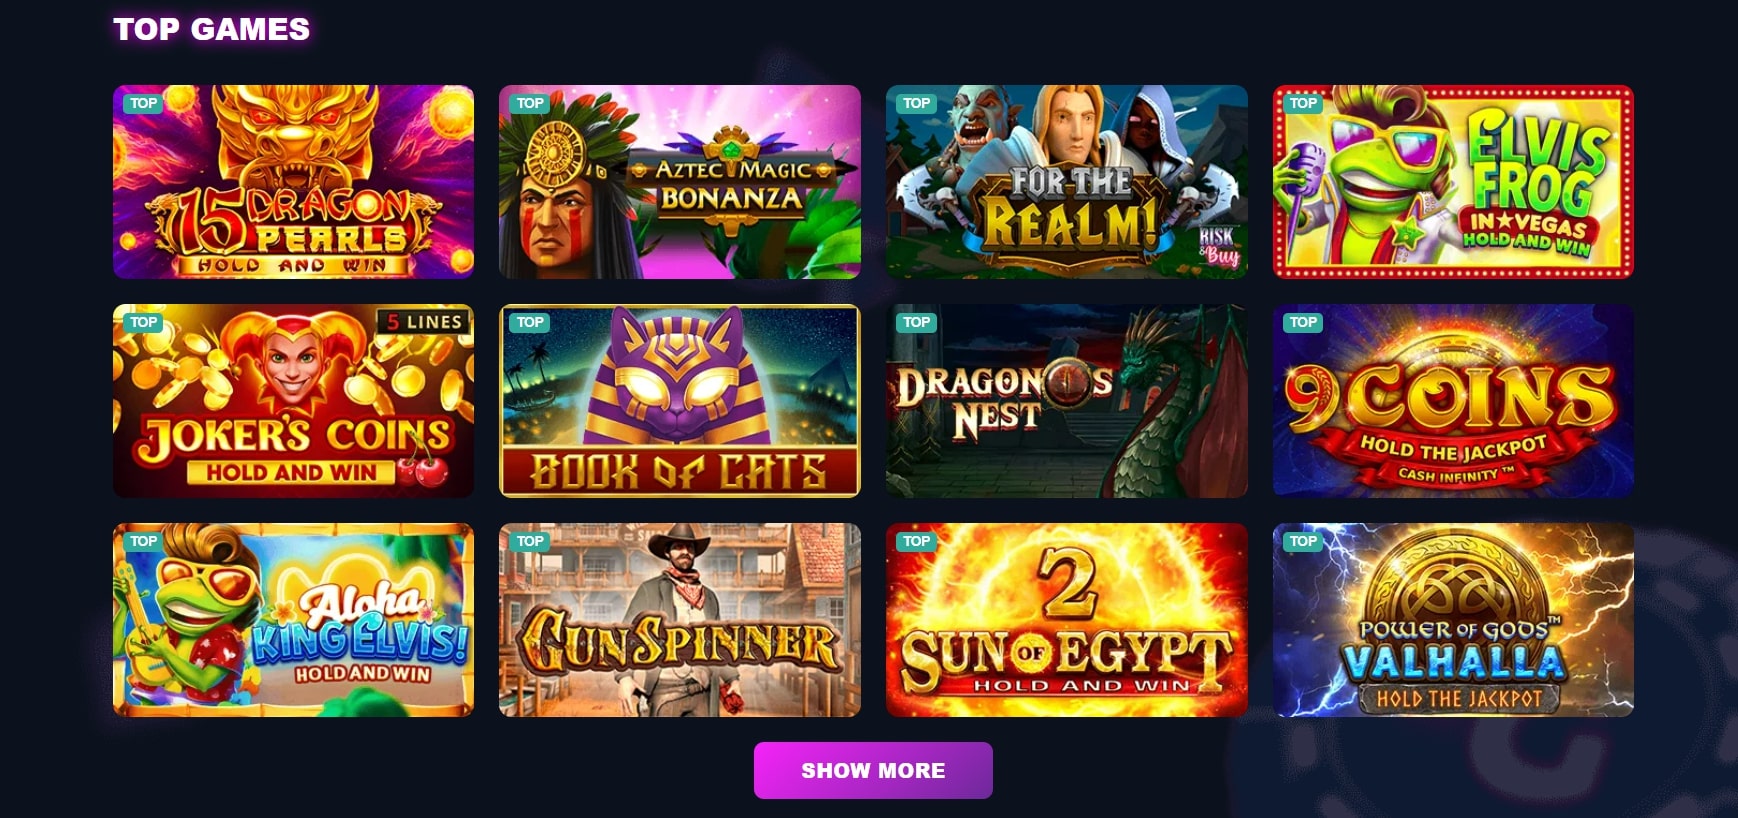 Slots Gallery_Games